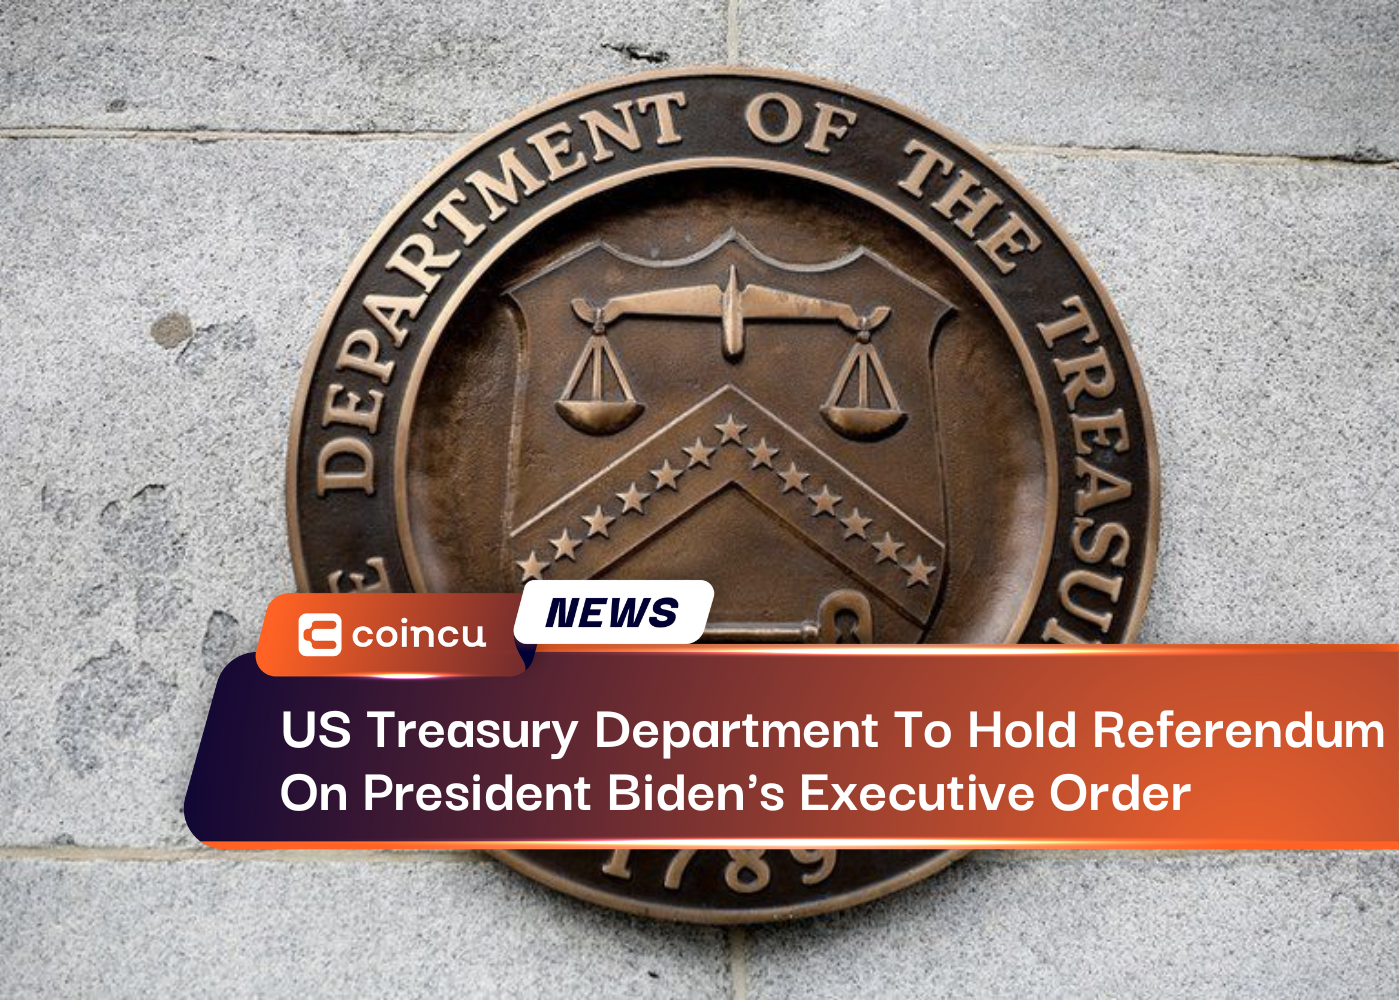 अमेरिकी ट्रेजरी विभाग राष्ट्रपति बिडेन के कार्यकारी आदेश पर जनमत संग्रह कराएगा